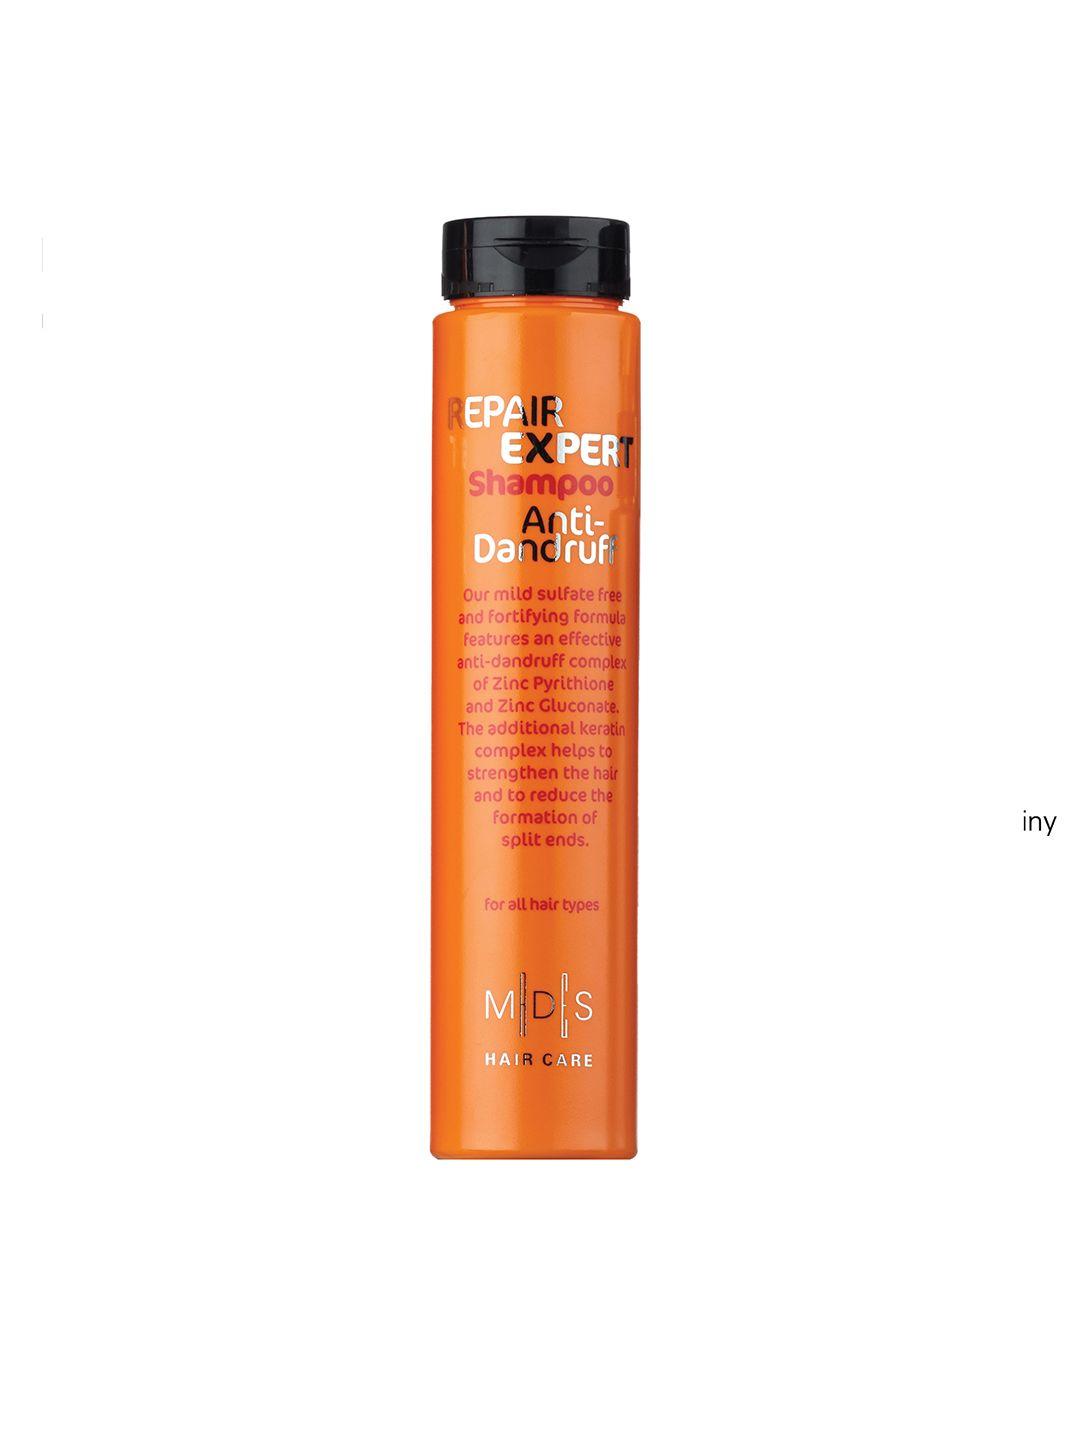 mades anti-dandruff hair care repair expert shampoo 250ml